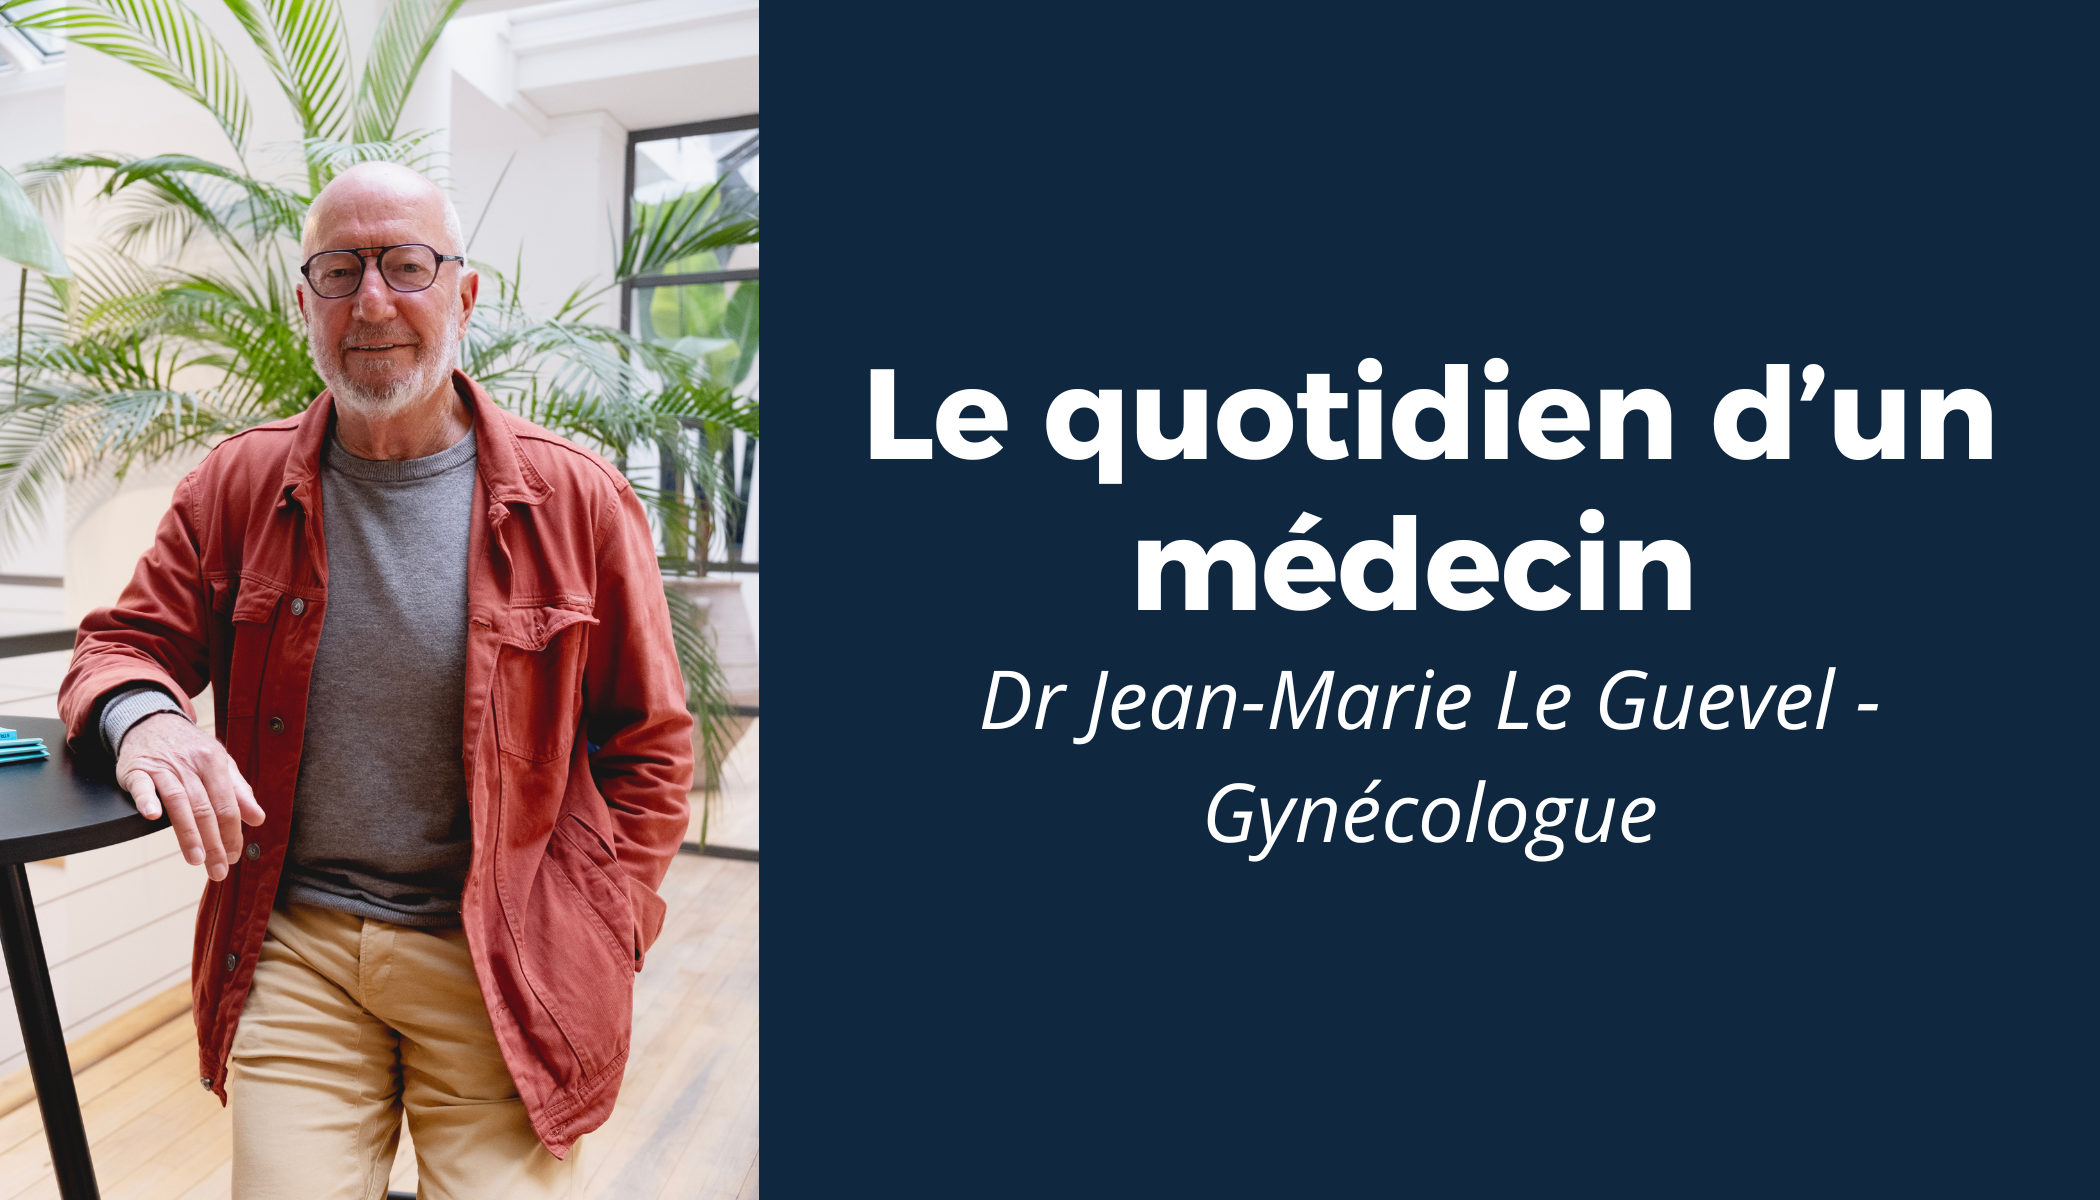 “Le quotidien d’un médecin” #4 - Rencontre avec le Dr Jean-Marie Le Guevel